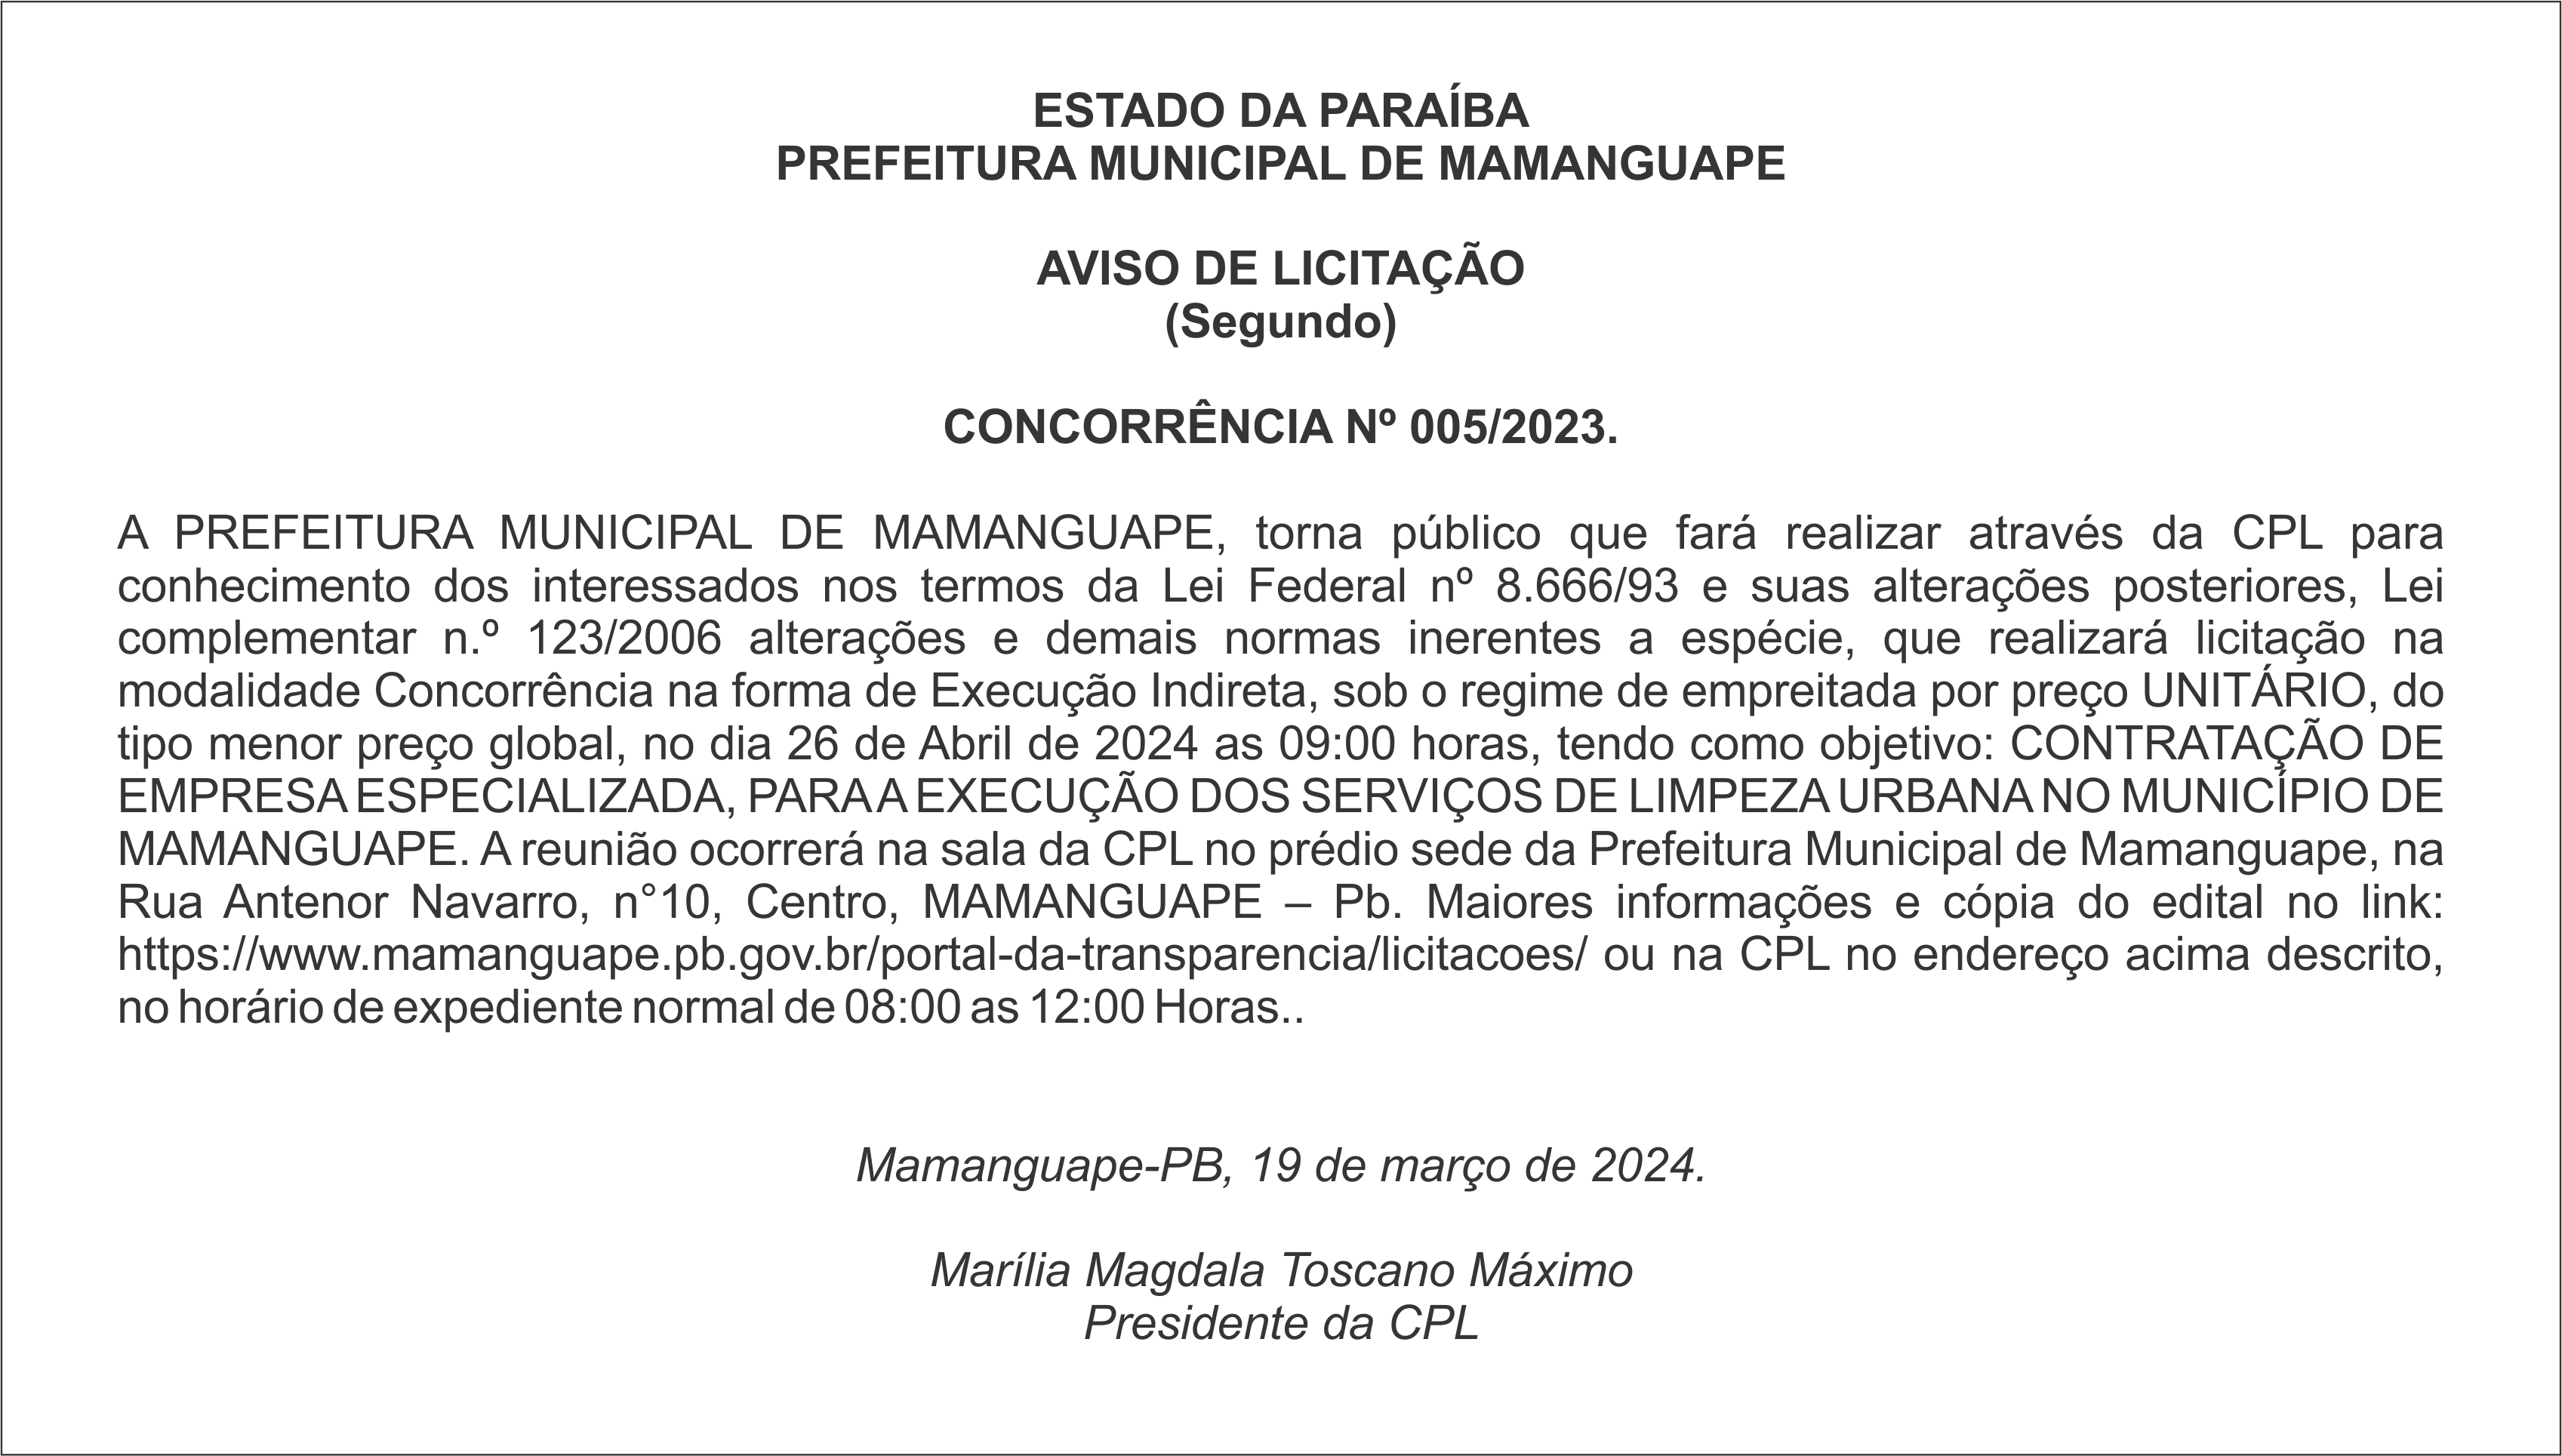 PREFEITURA MUNICIPAL DE MAMANGUAPE – AVISO DE LICITAÇÃO (Segundo) – CONCORRÊNCIA Nº 005/2023.